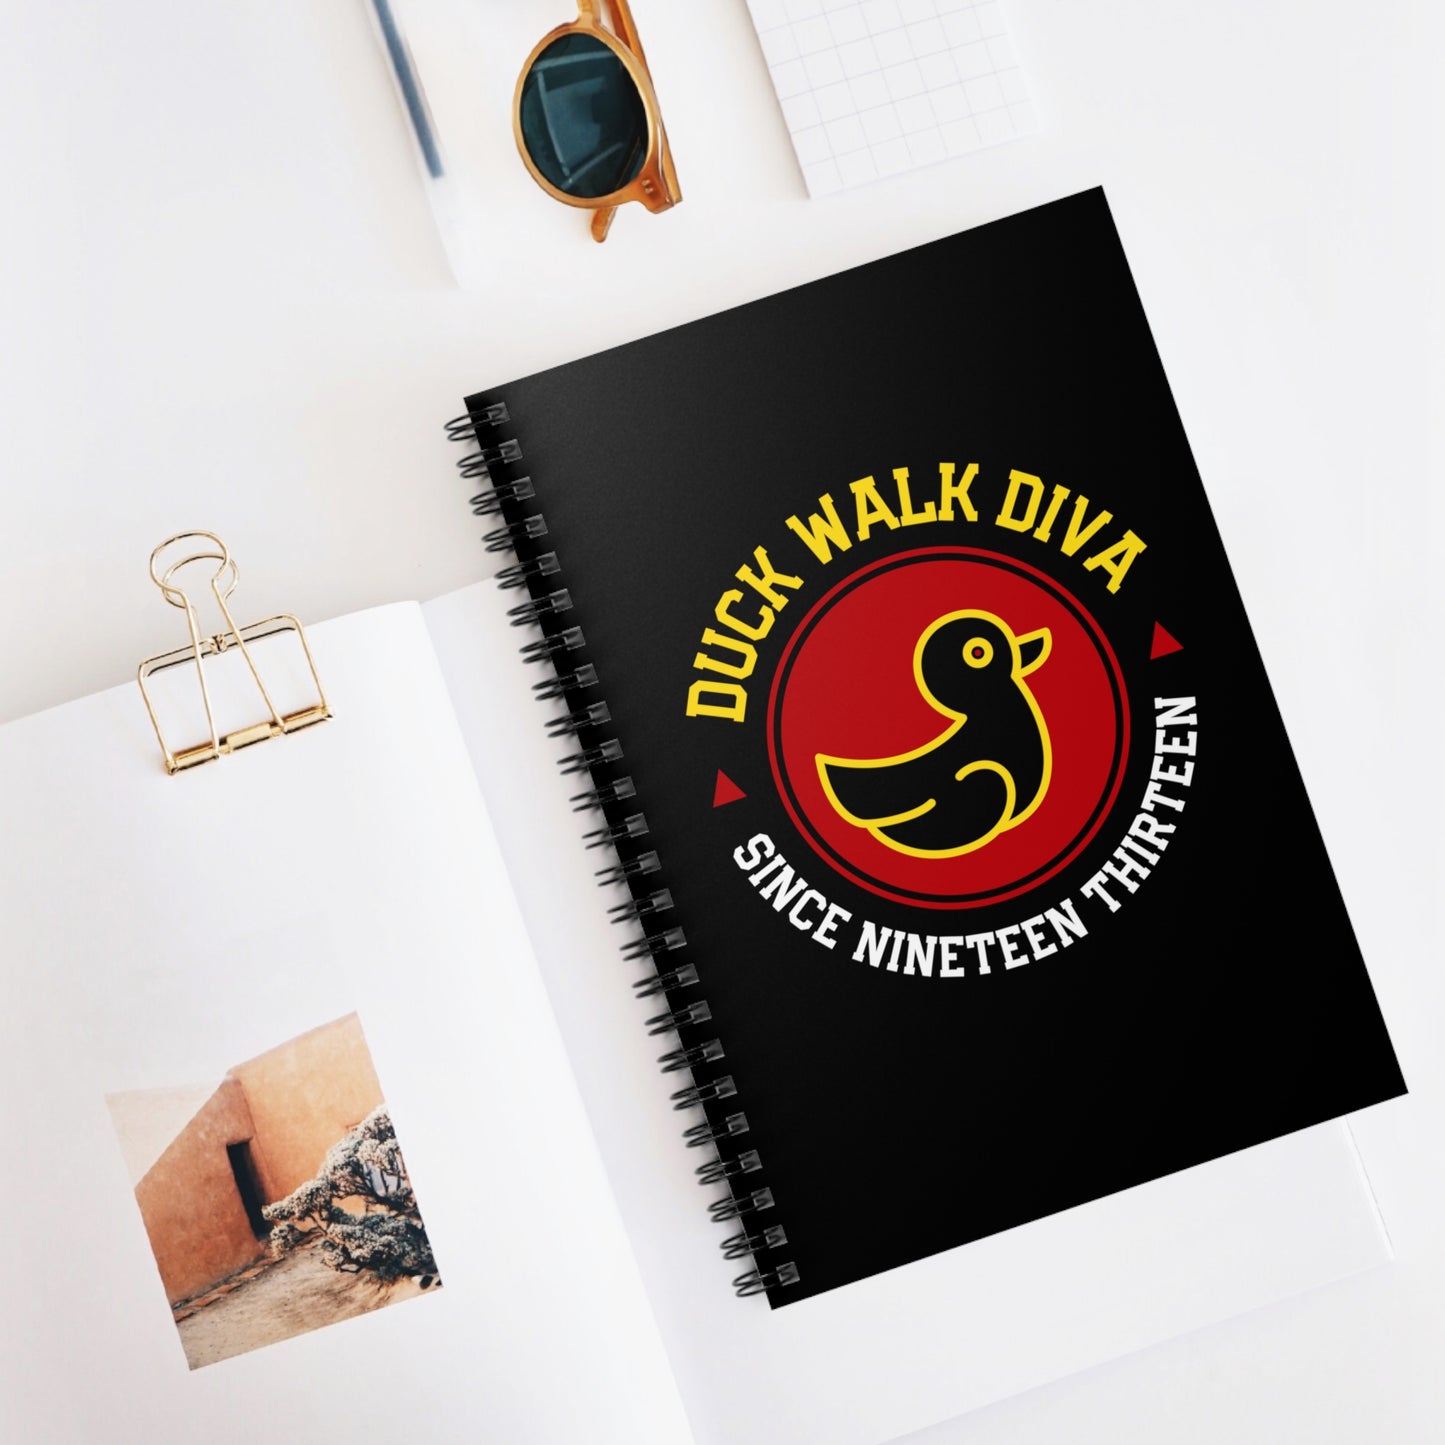 DST Duck Walk Diva Notebook